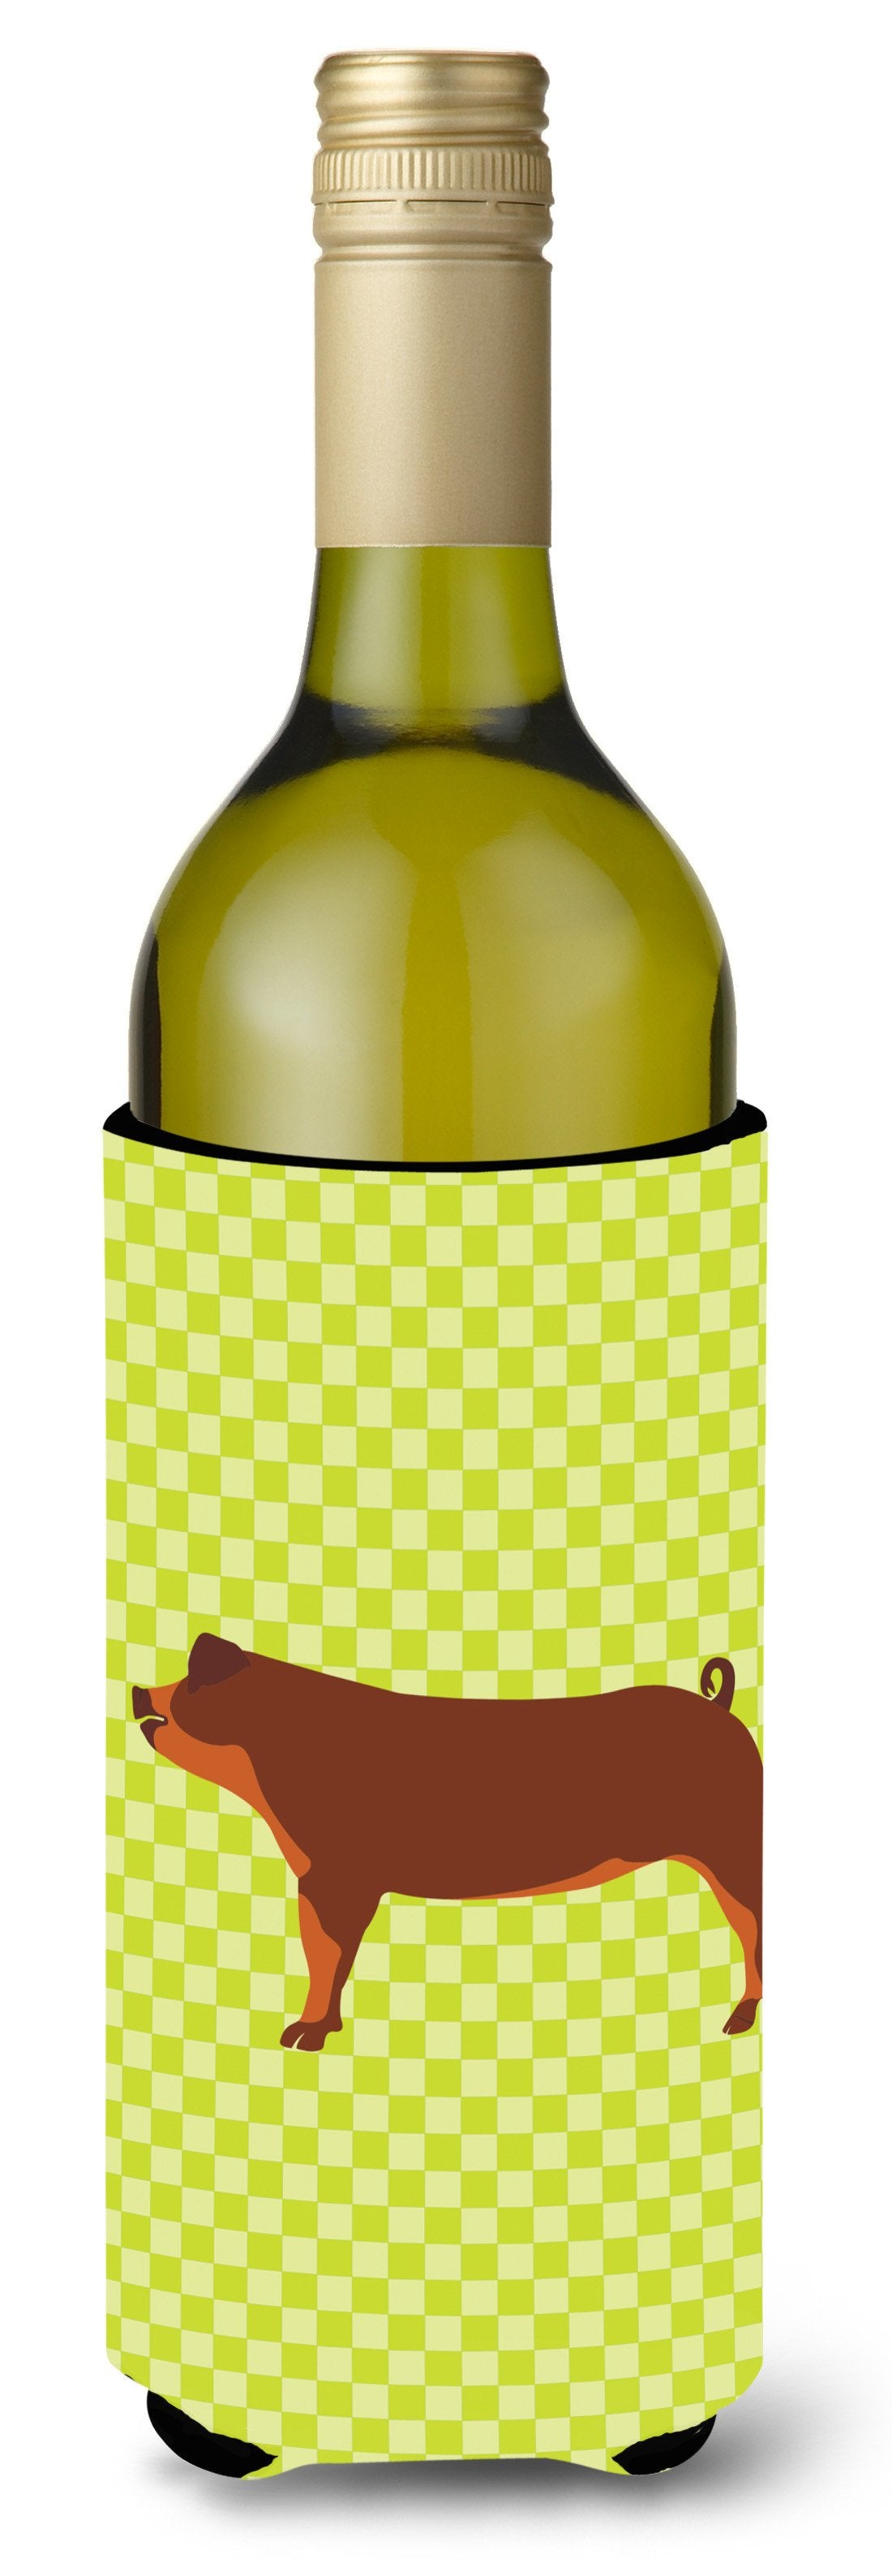 Duroc Pig Green Wine Bottle Beverge Insulator Hugger BB7768LITERK by Caroline's Treasures